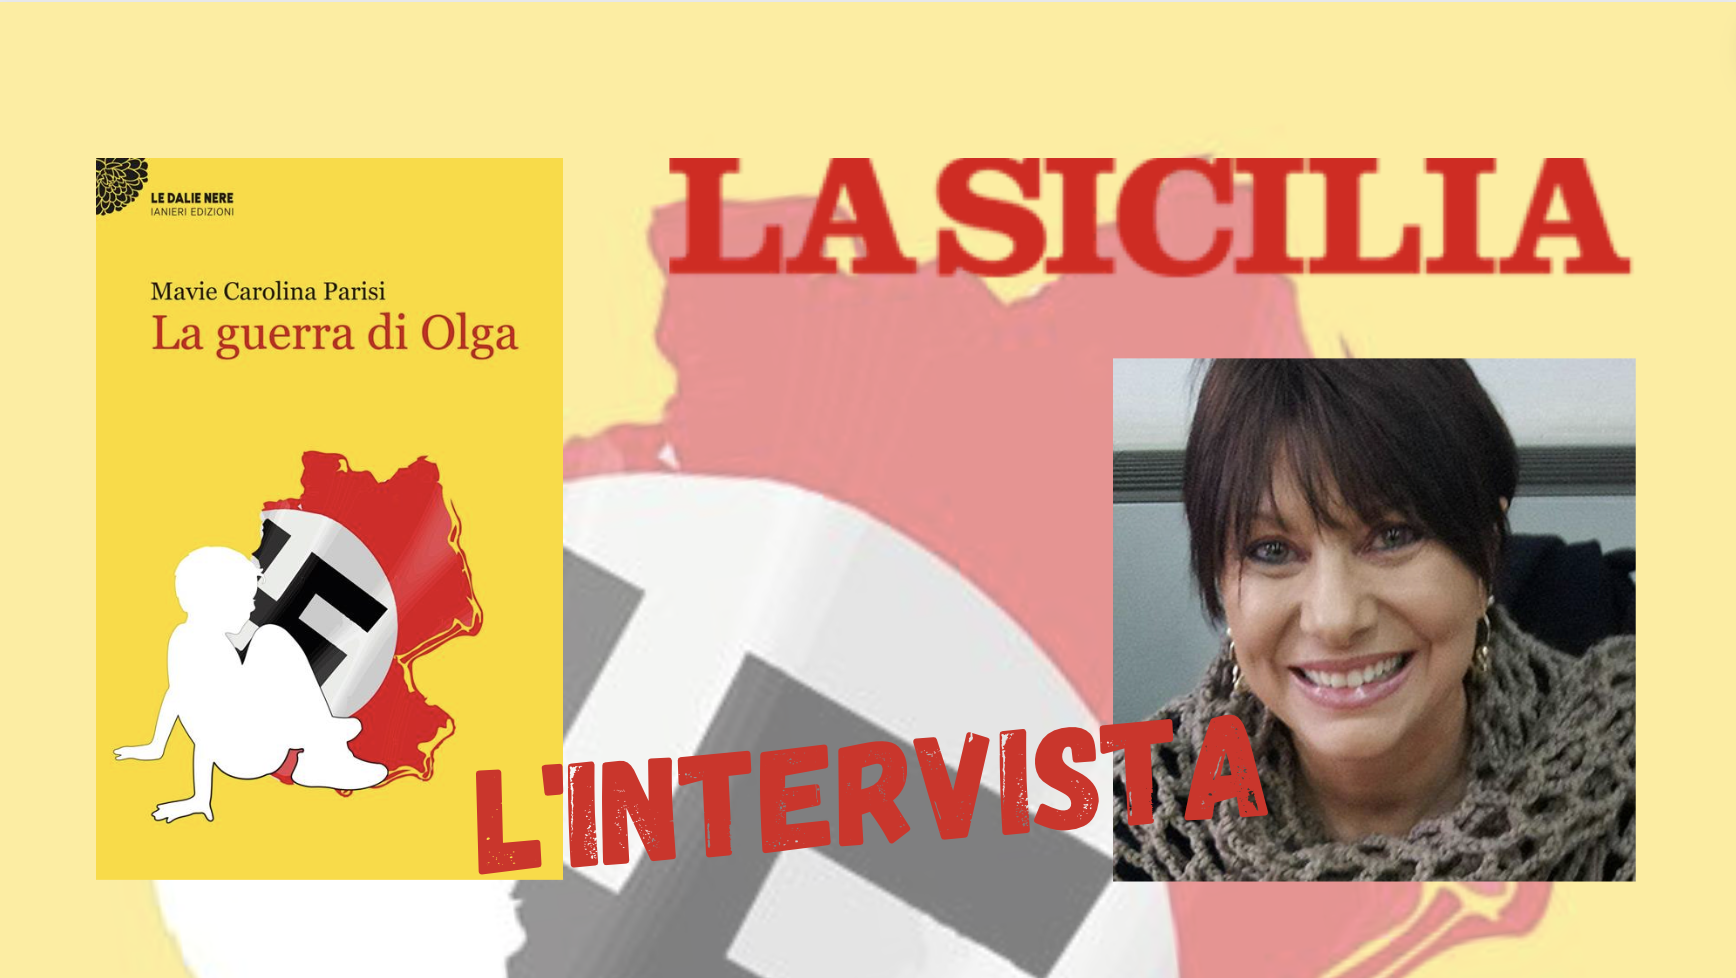 SMF per La Sicilia – Vivere fino in fondo da esseri umani – Intervista a Mavie carolina Parisi sul sul romanzo “La guerra di Olga”